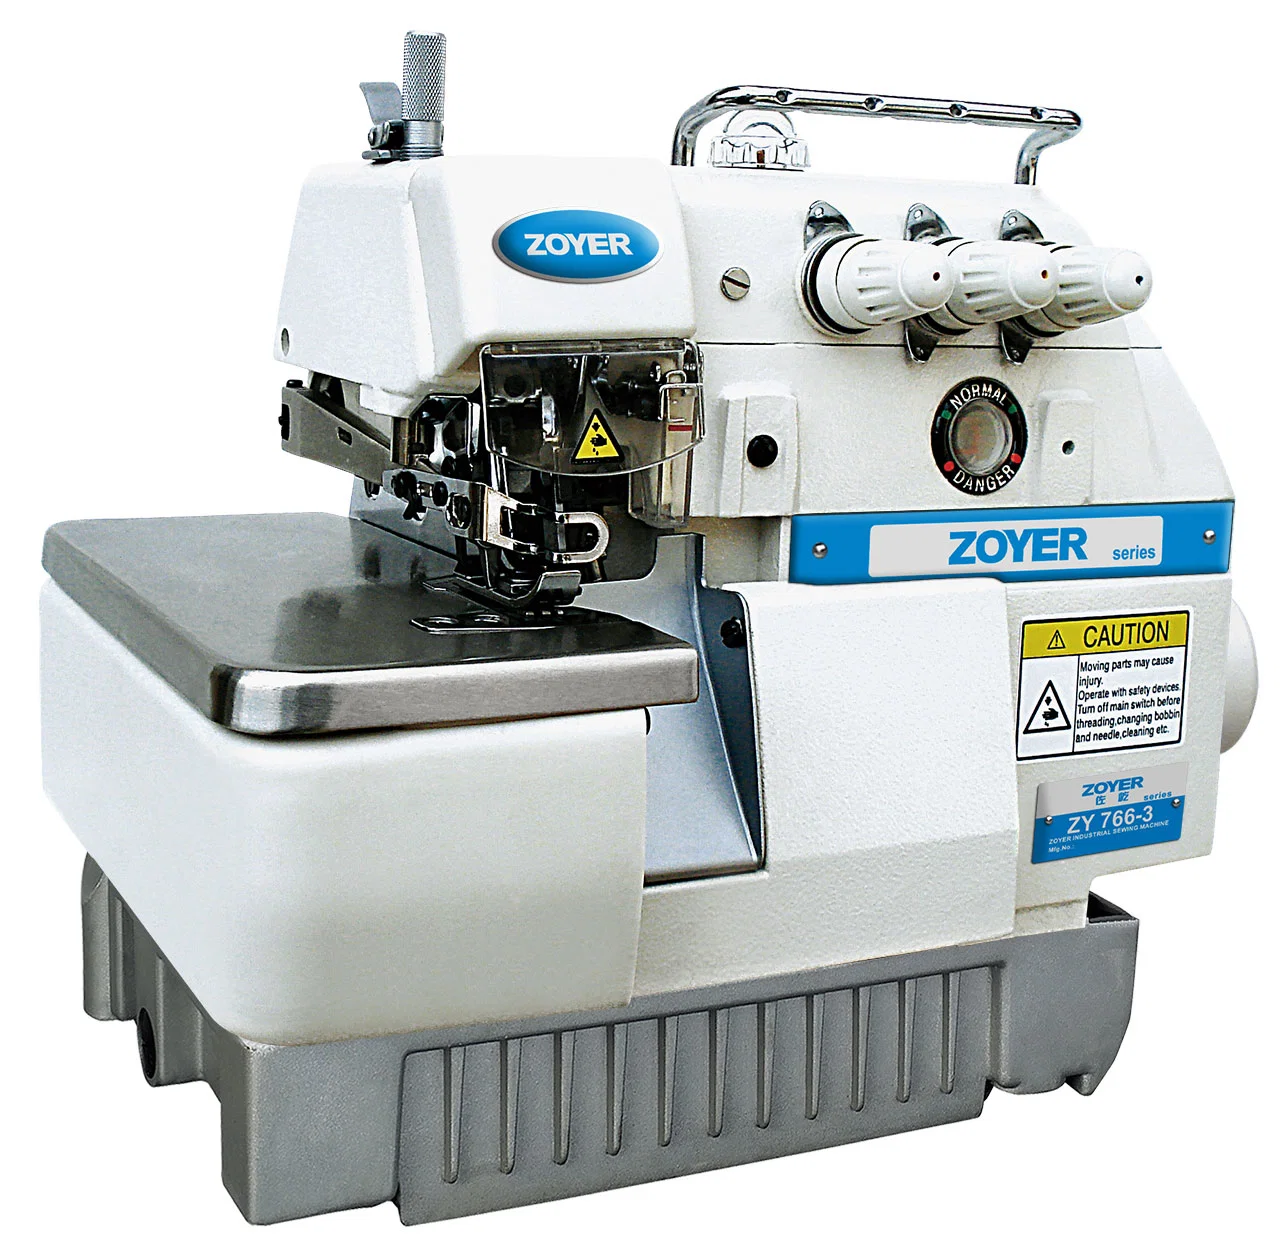 Zy766-3 Zoyer 3-нить Super высокой скорости Overlock промышленных швейных машин для одежды